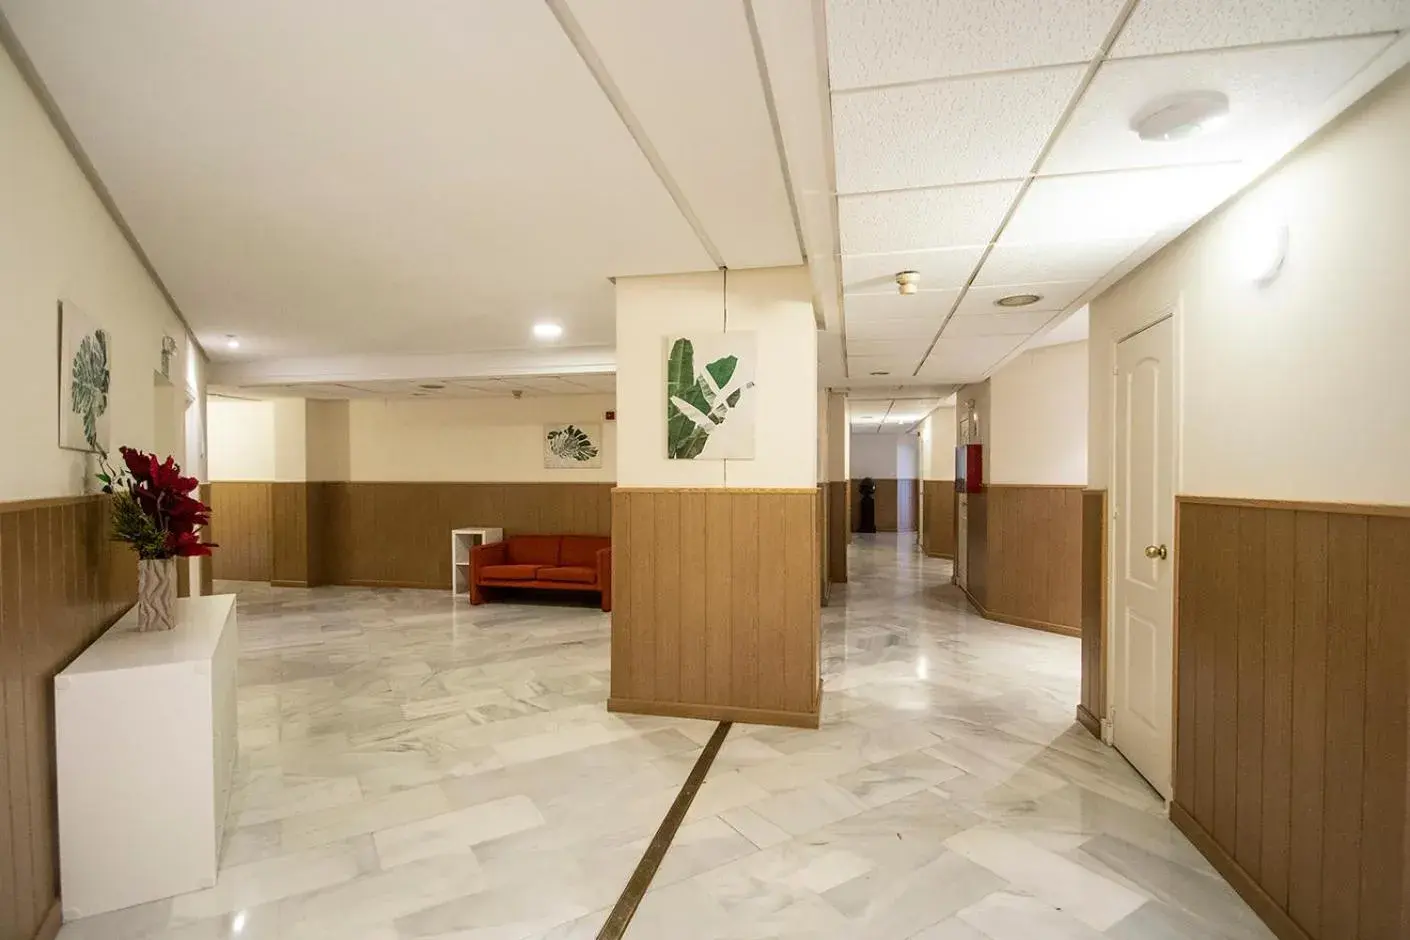 Area and facilities, Lobby/Reception in Hospedium Hotel Apartamentos Simón Verde